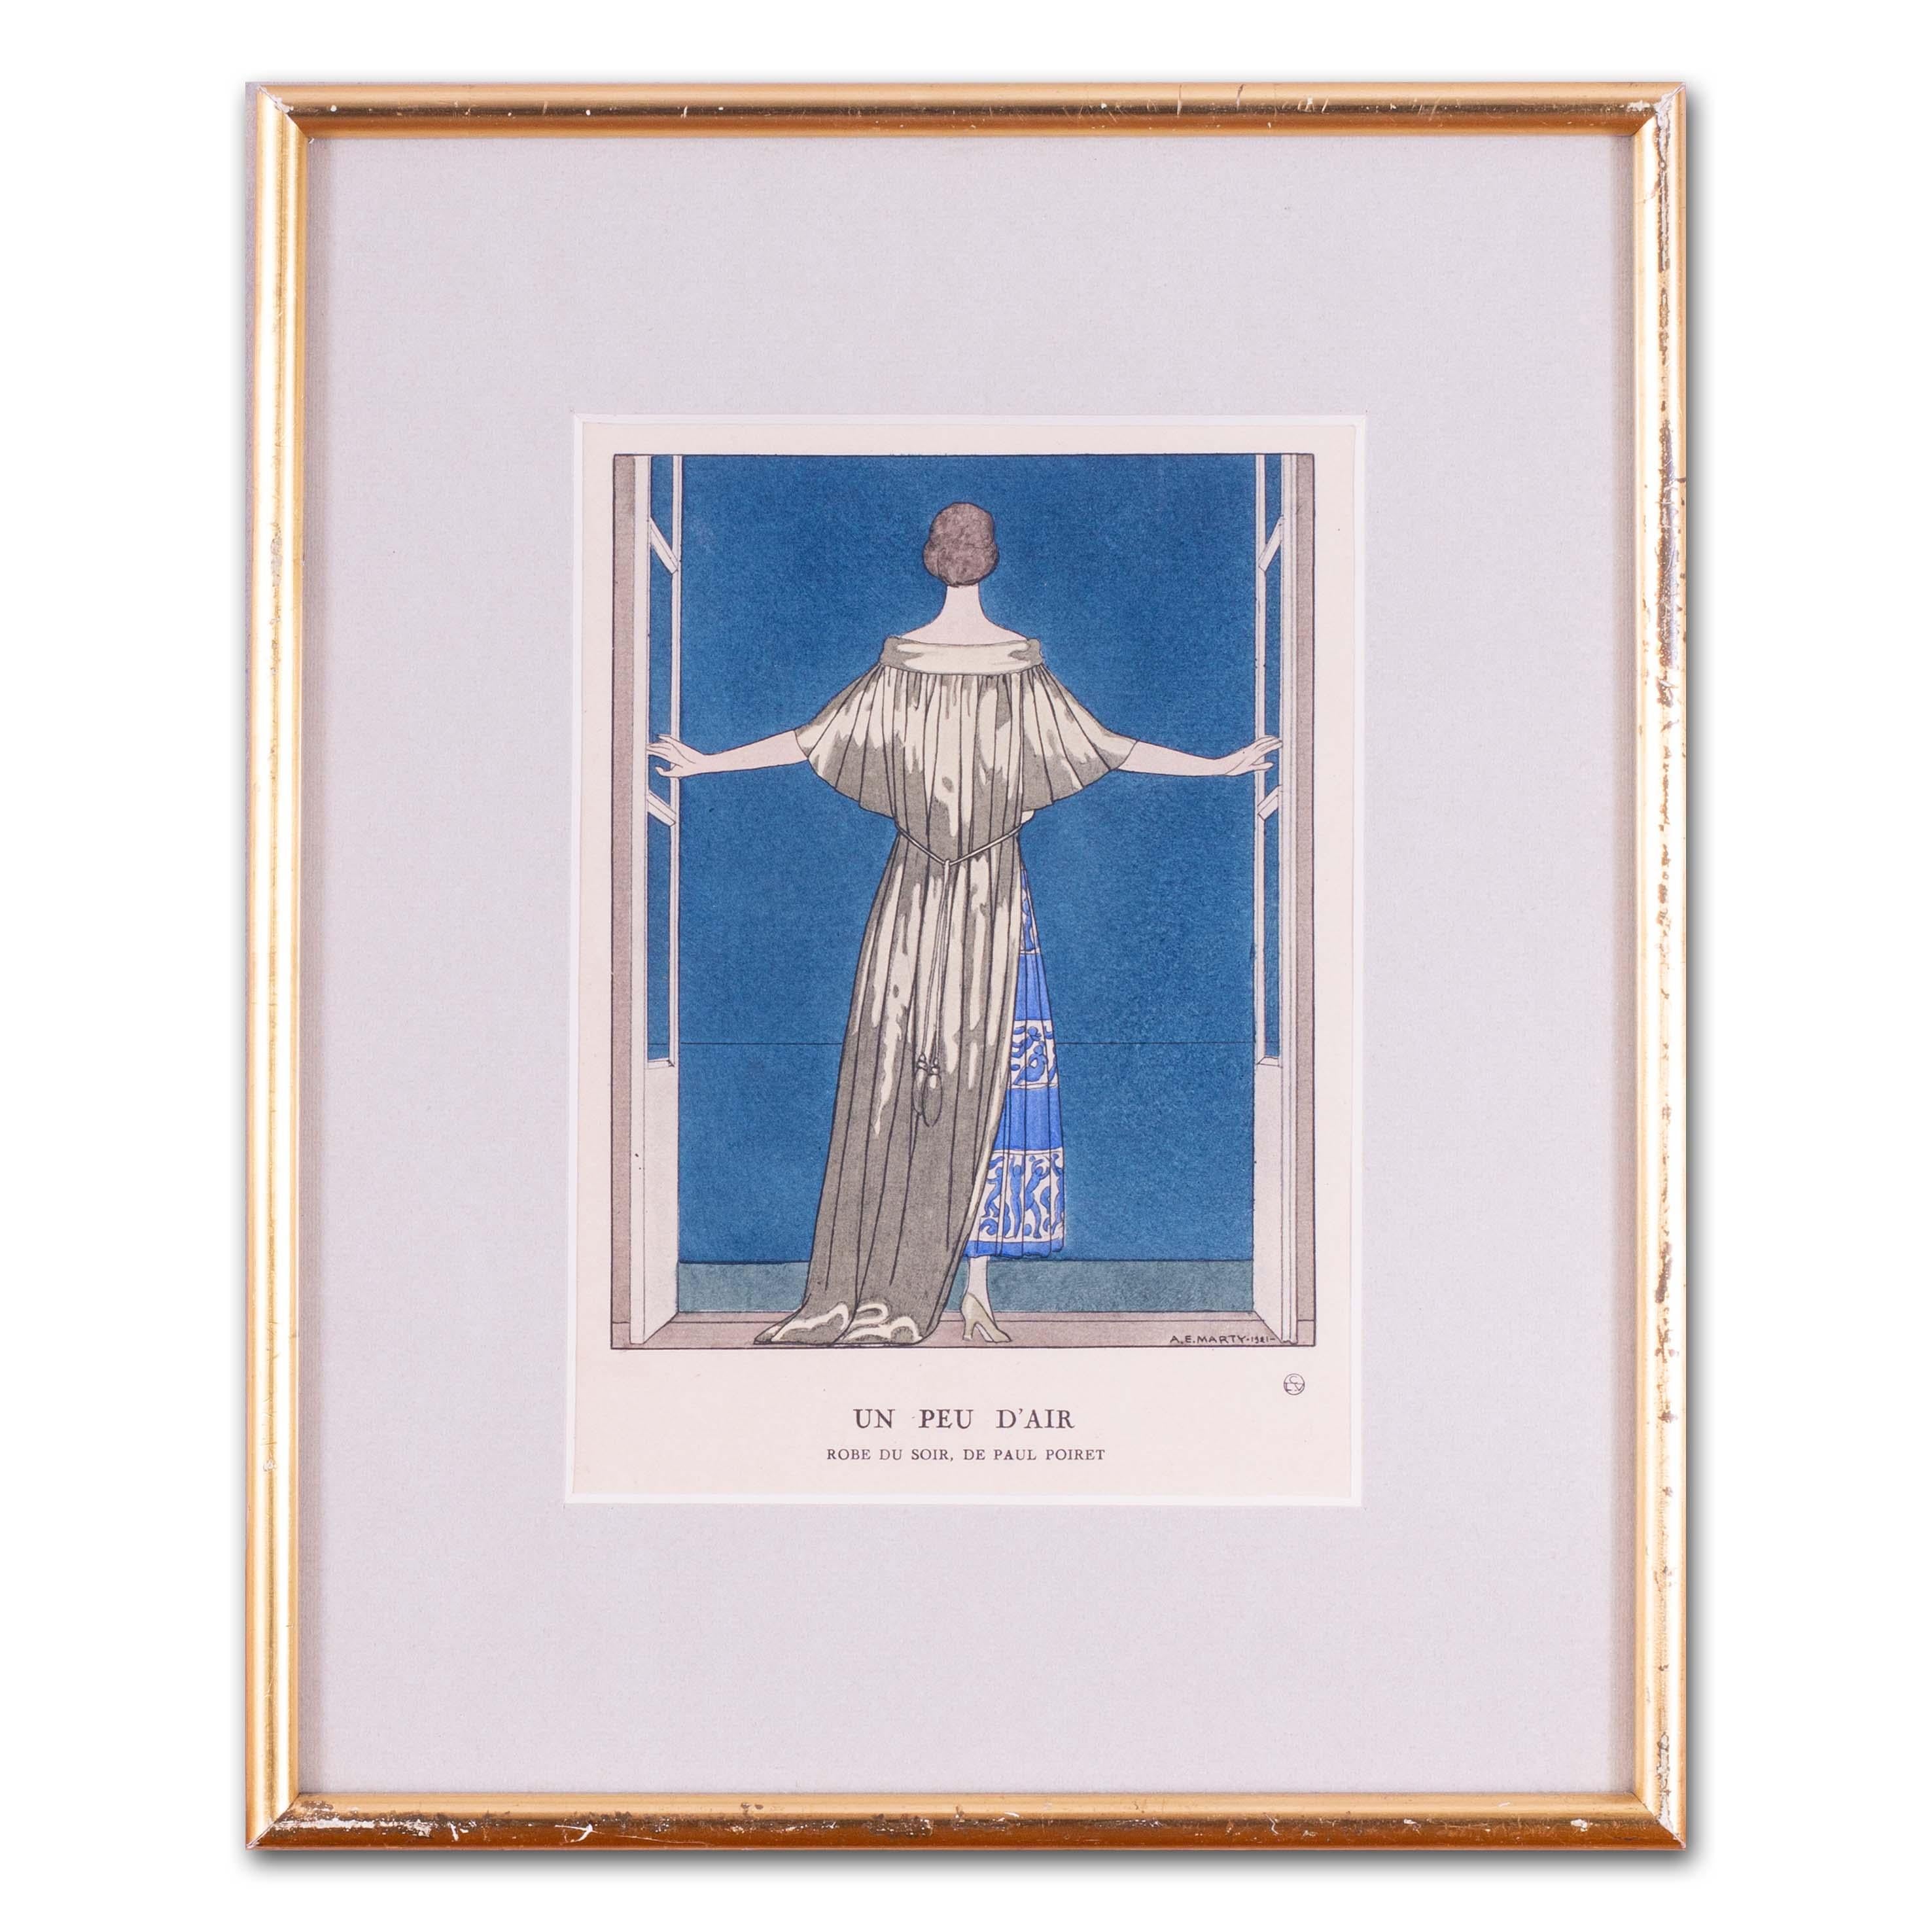 Après Andre Edouard Marty
Un peu d'air, robe du soir de Paul Poiret, 1921
Lithographie coloriée à la main avec aquarelle
Signé, inscrit et daté dans l'assiette
8.1/8 x 5,7/8 po (20,7 x 15 cm)
